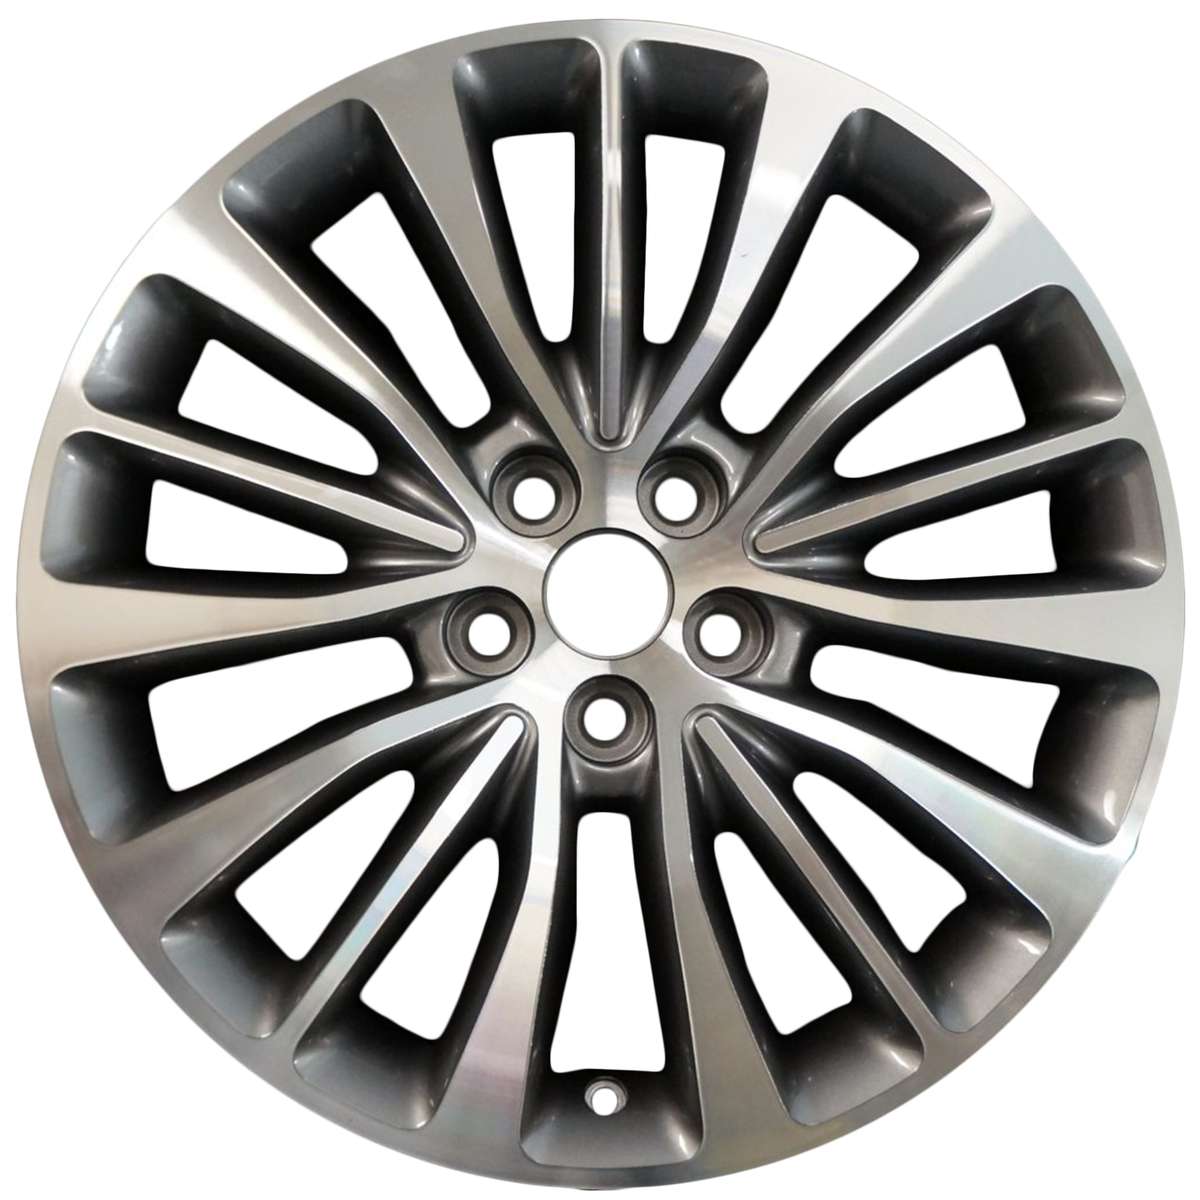 2015 Lincoln MKX 18" OEM Wheel Rim W10072MC